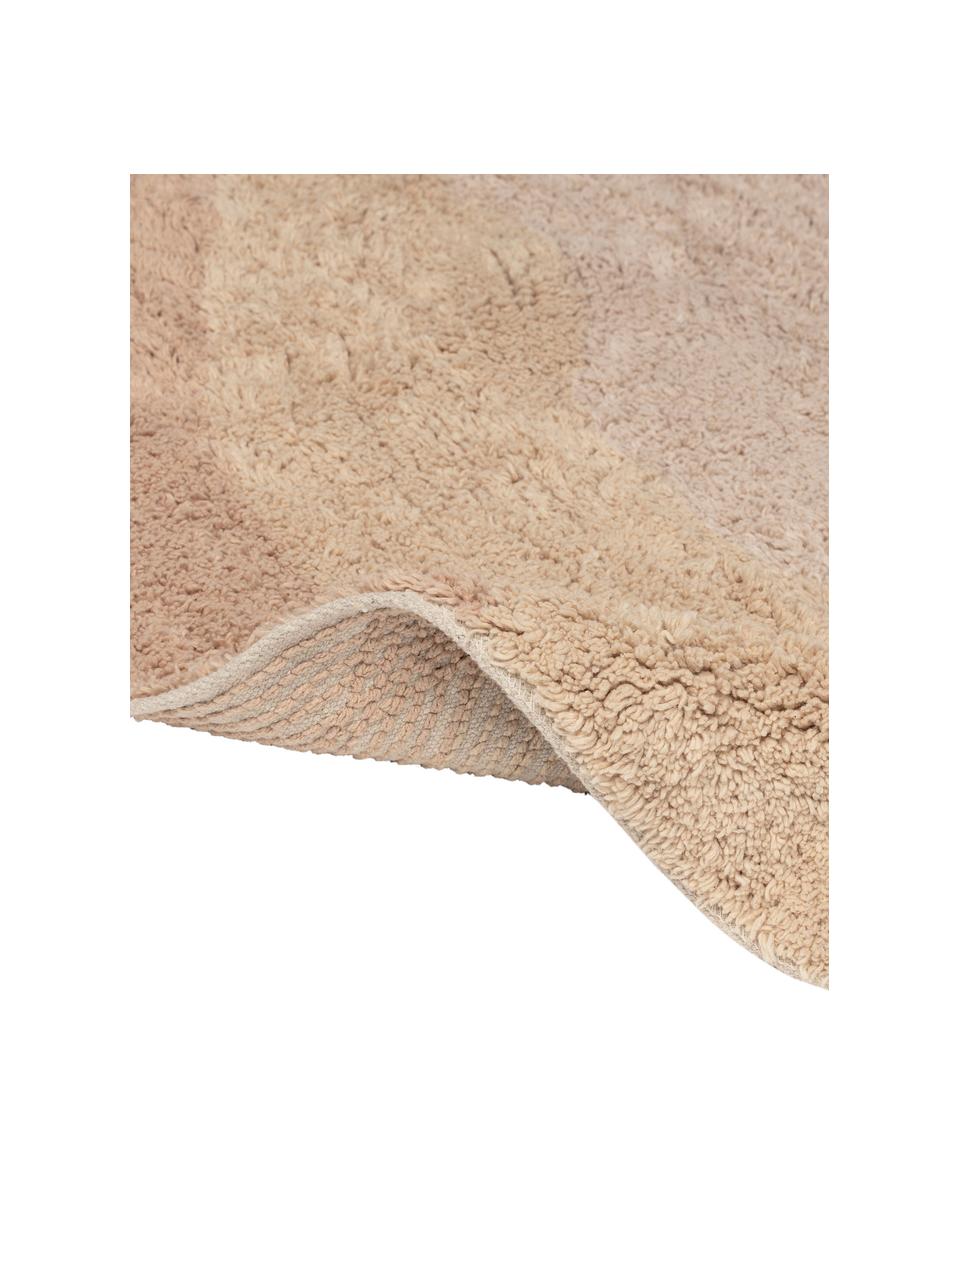 Ovaler Baumwollteppich Malva in Beige-Tönen, gemustert, 100% Baumwolle, Beigetöne, B 90 x L 150 cm (Grösse M)